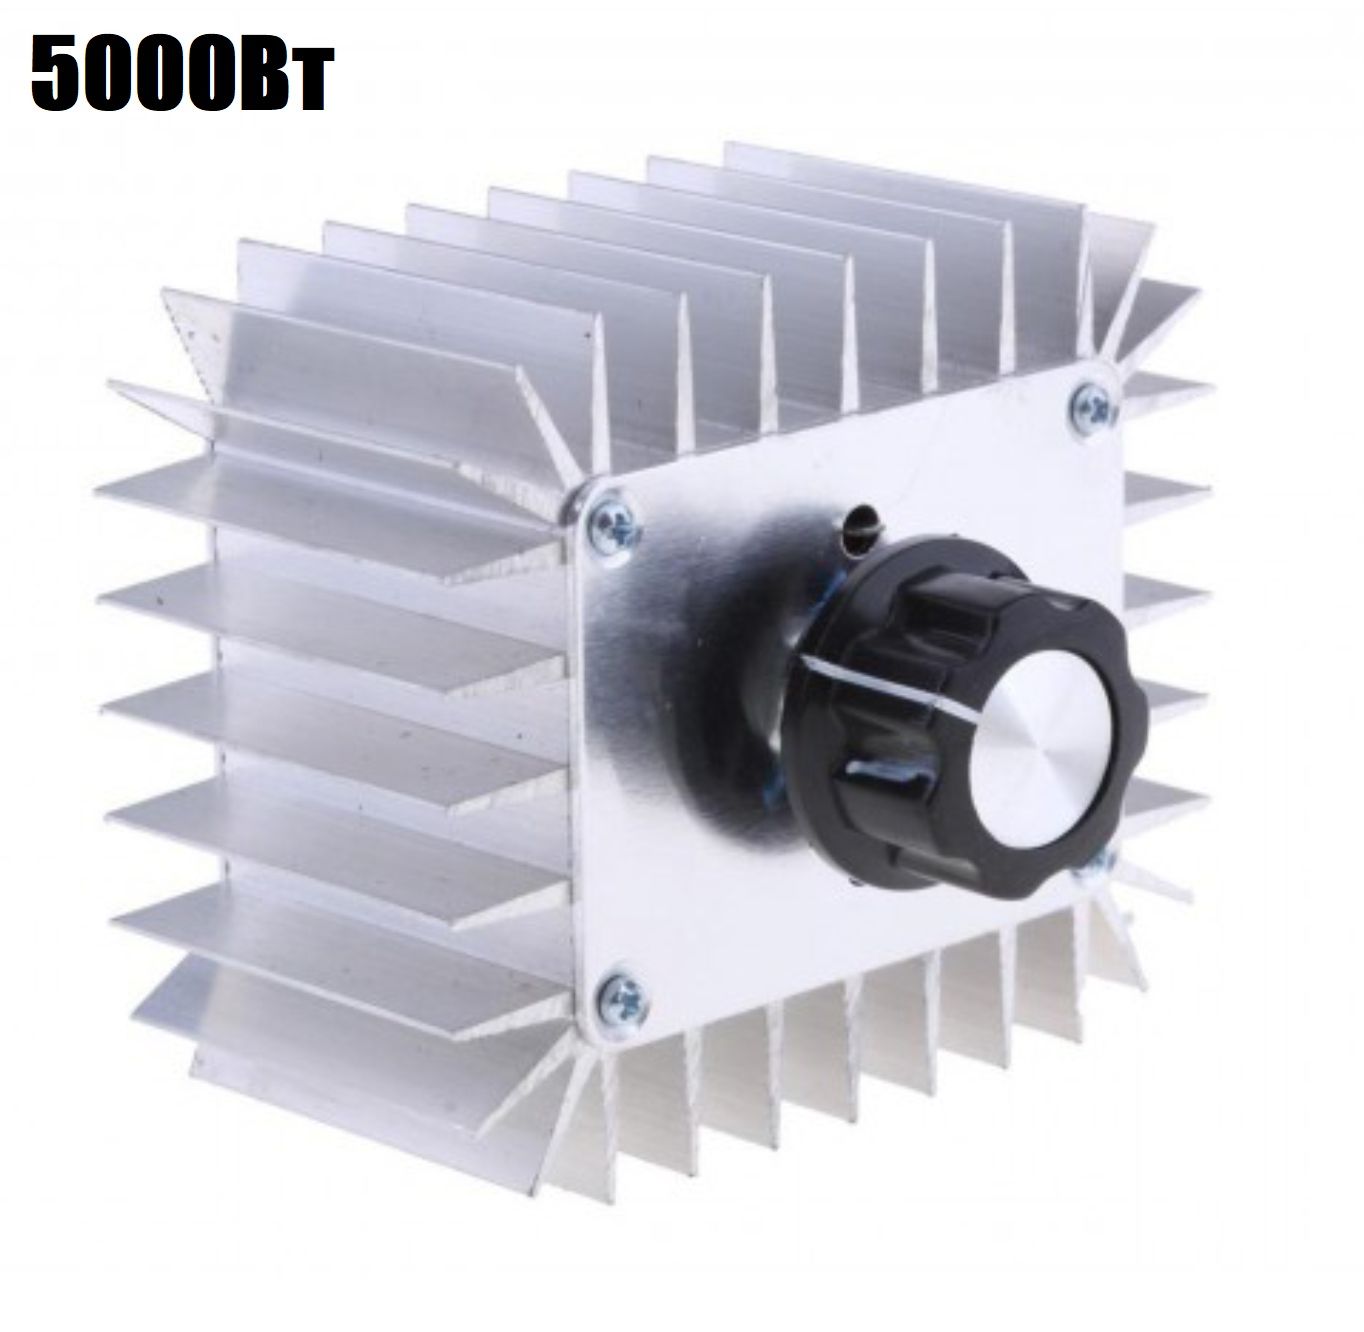 Симисторный 9V регулятор переменного напряжения, температуры, света, скорости 5000Вт (У) электронный бытовой стабилизатор напряжения tdm